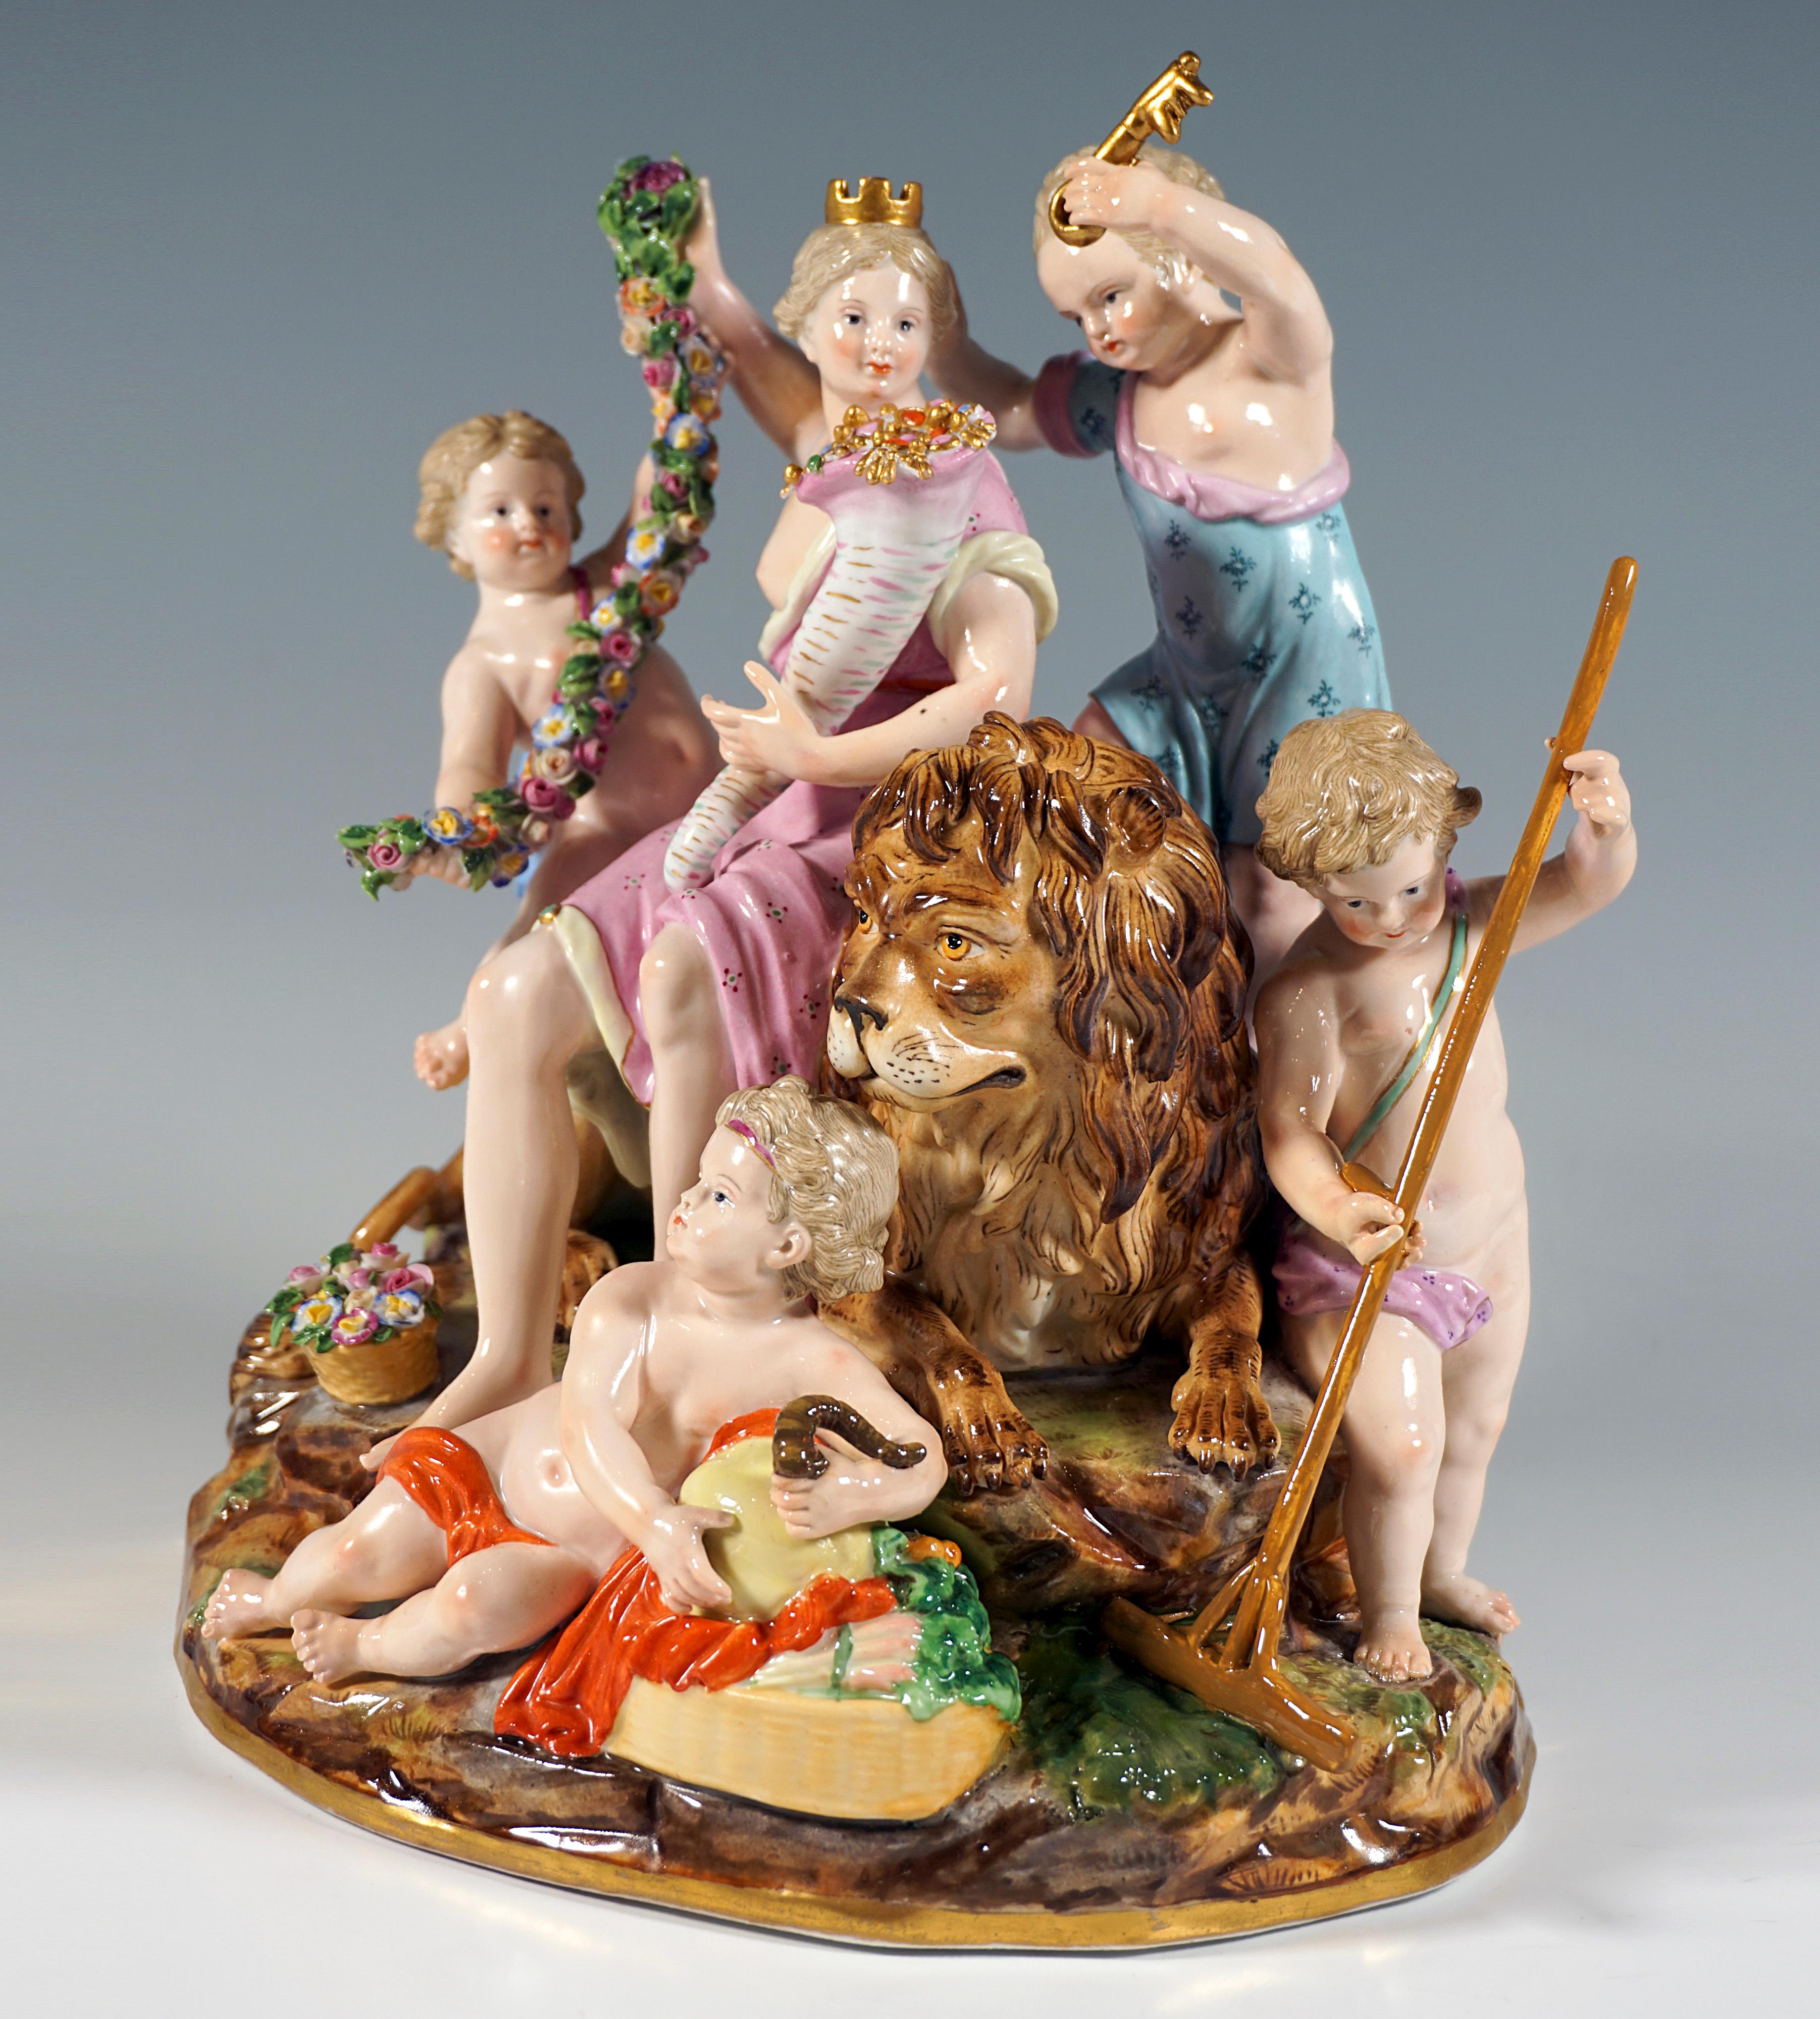 Excellent groupe en porcelaine de Meissen du 19ème siècle :
Représentation de la déesse Kybele, la grande mère phrygienne des dieux 